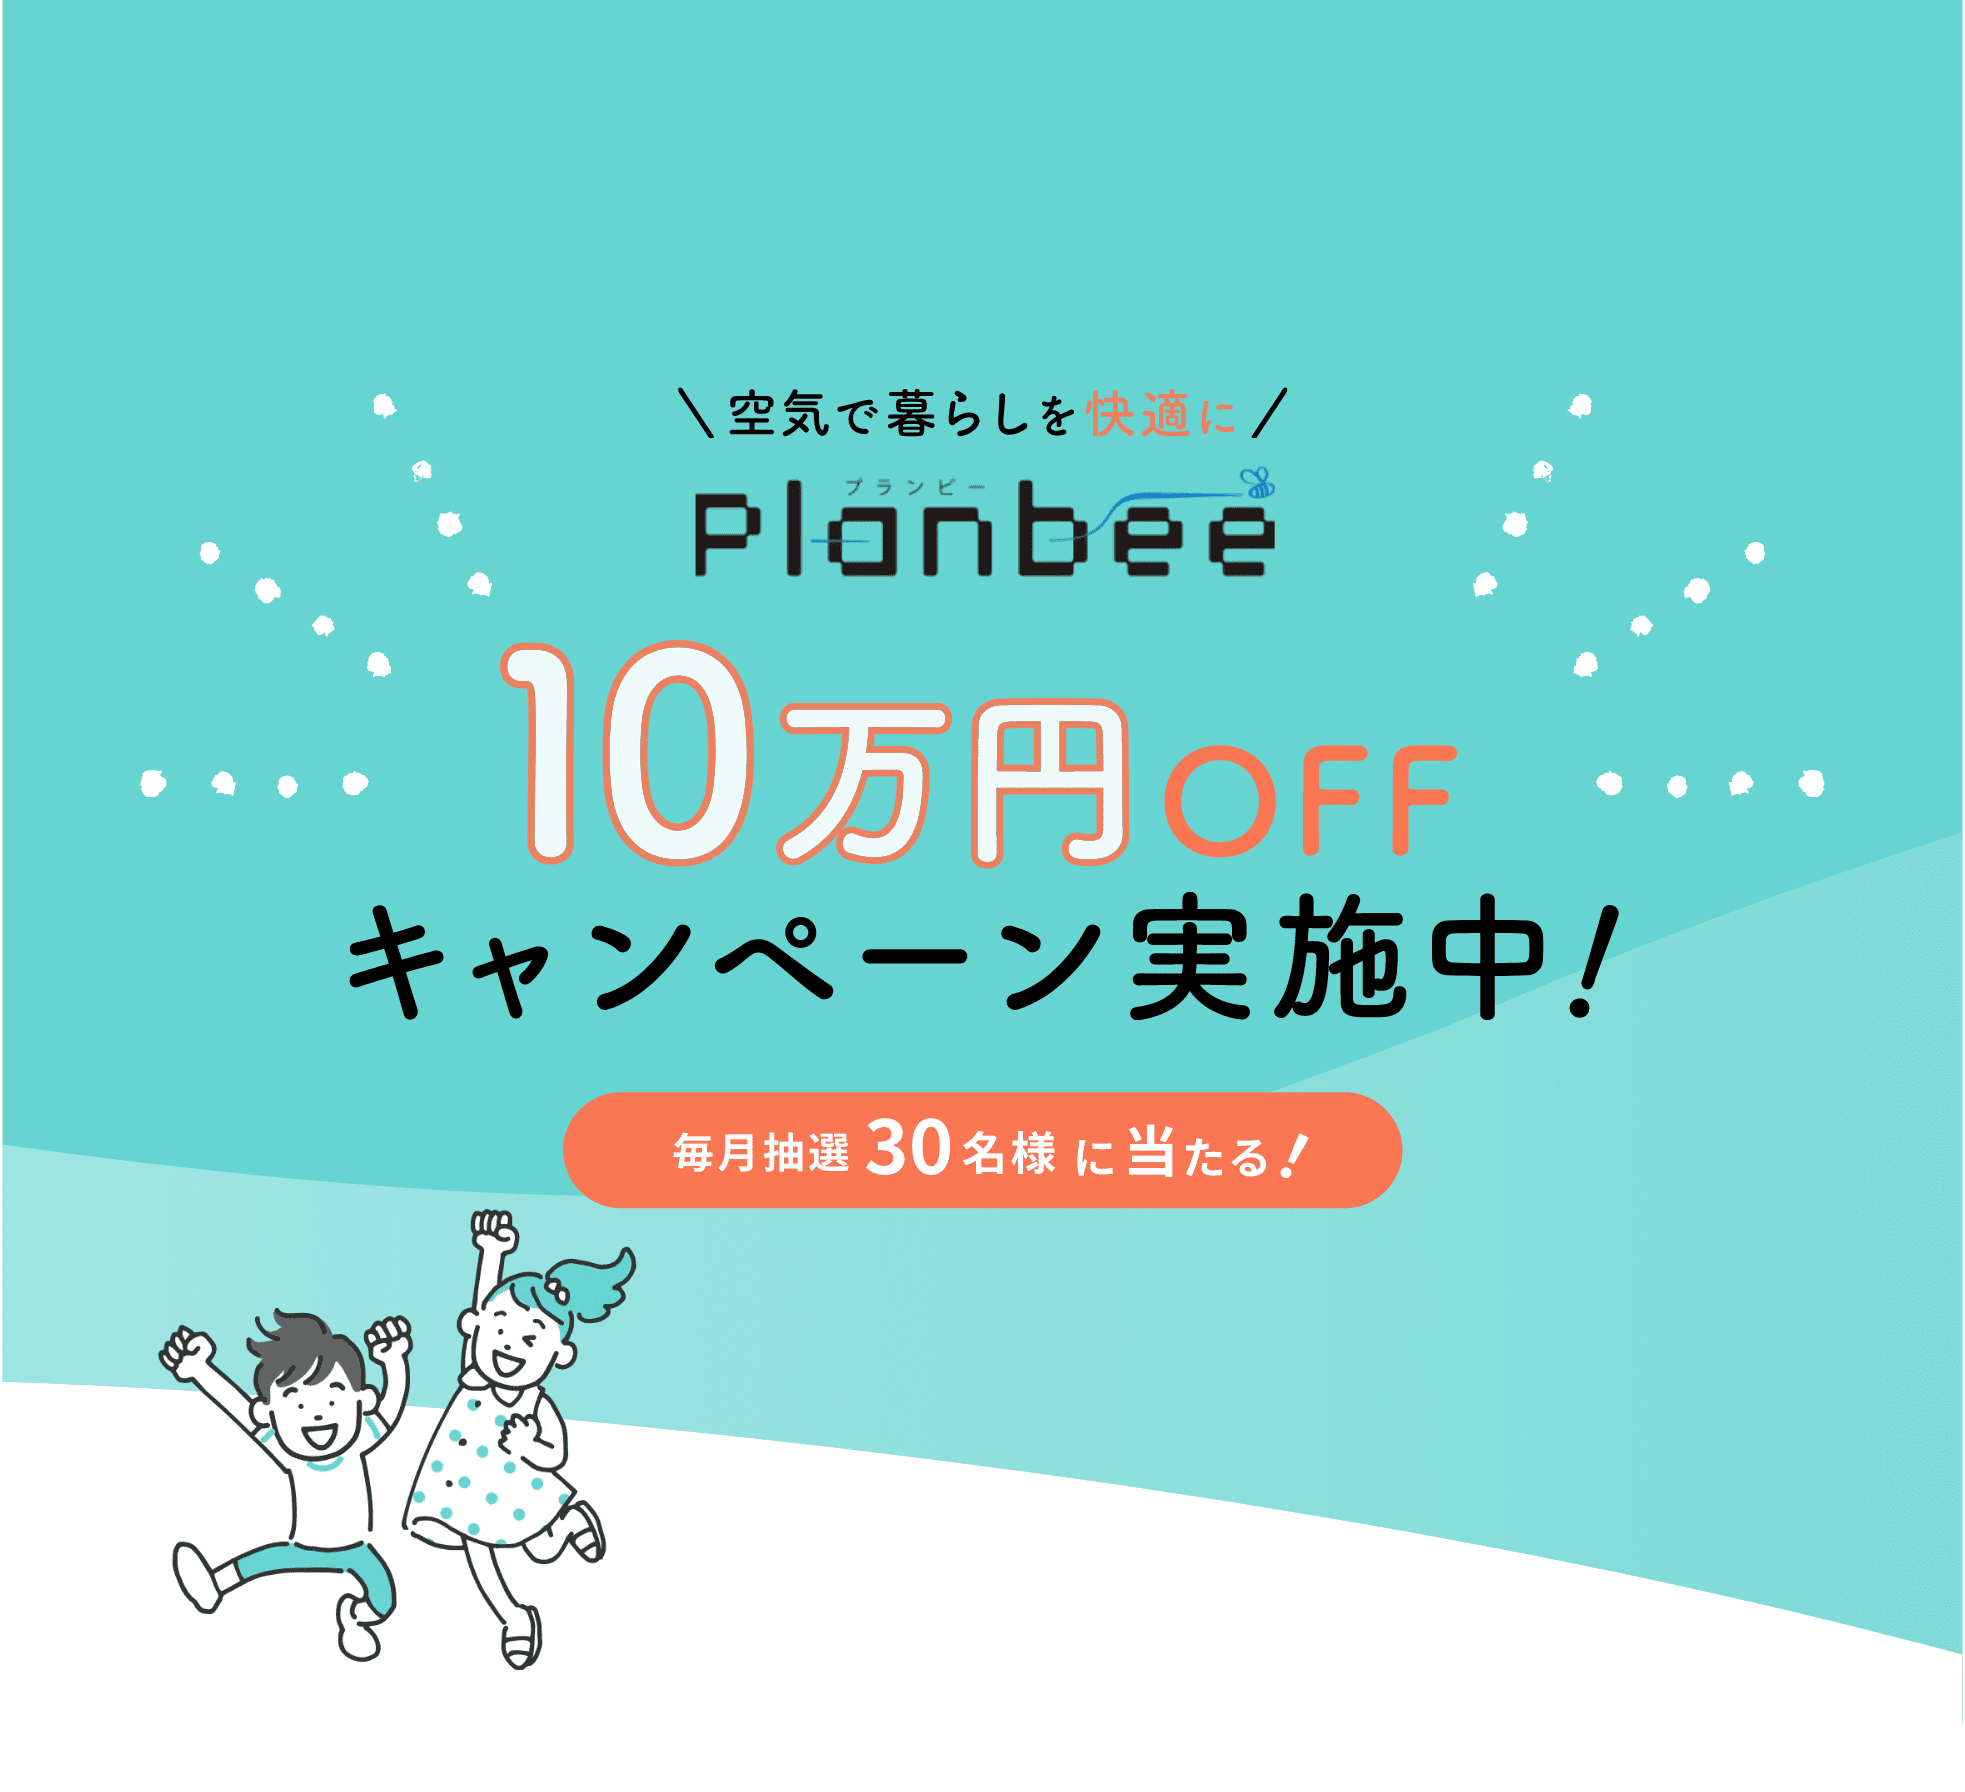 Planbee 10万円OFFキャンペーン実施中